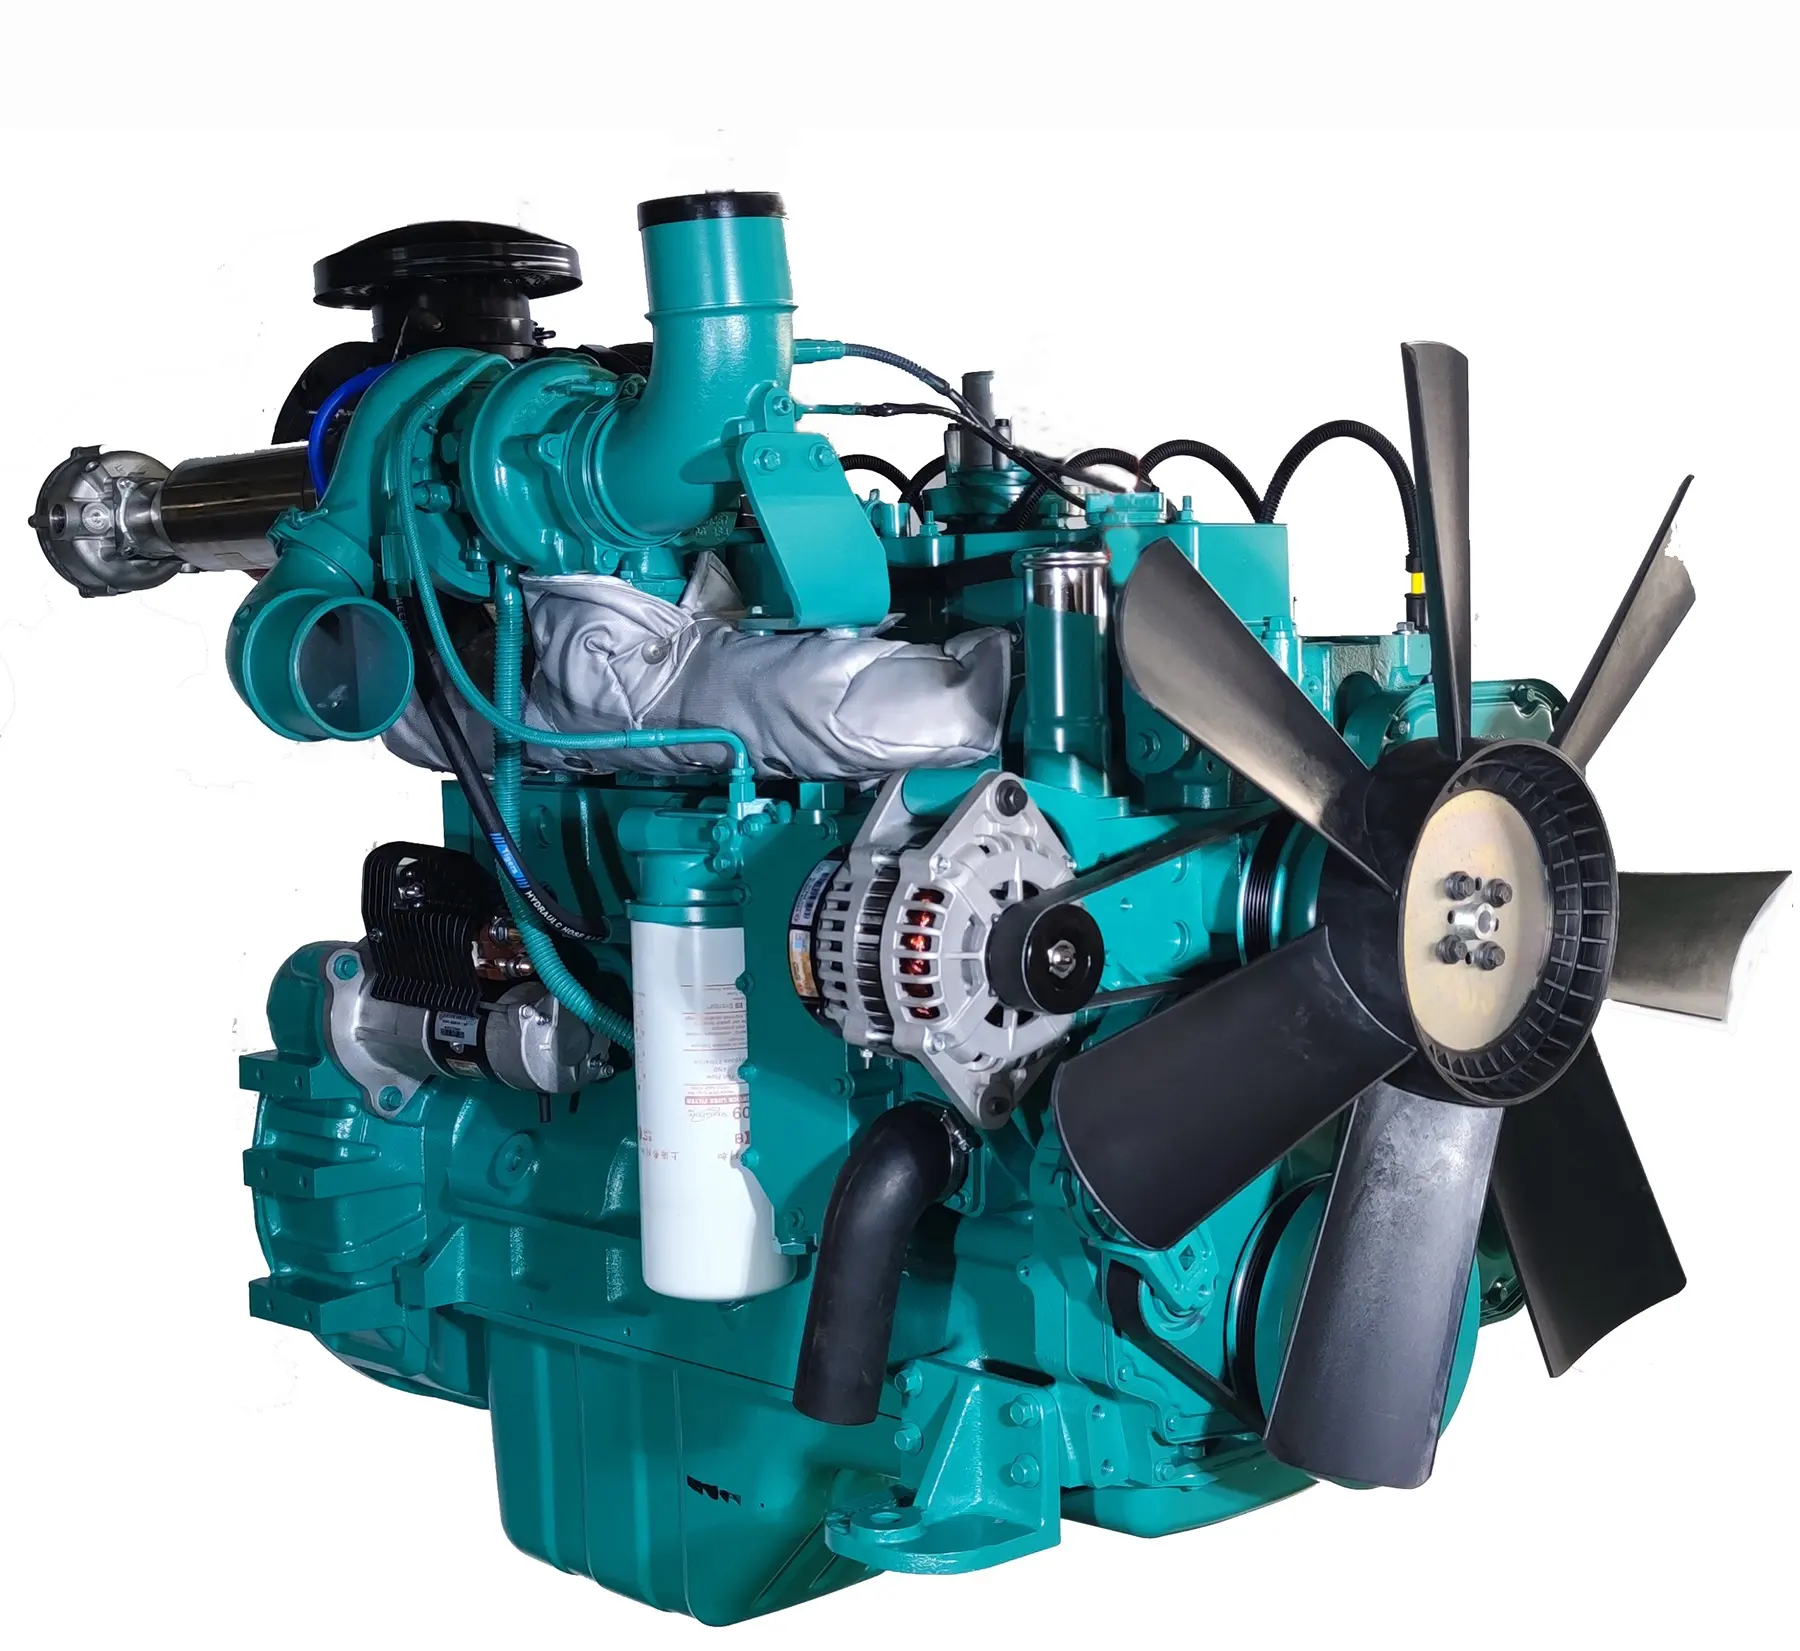 Lyc8.3 g двигатель с мощностью метана LNG биогаз водородный двигатель, генератор, биогазовый двигатель LPG, двигатель из биомассы для генератора и насосов